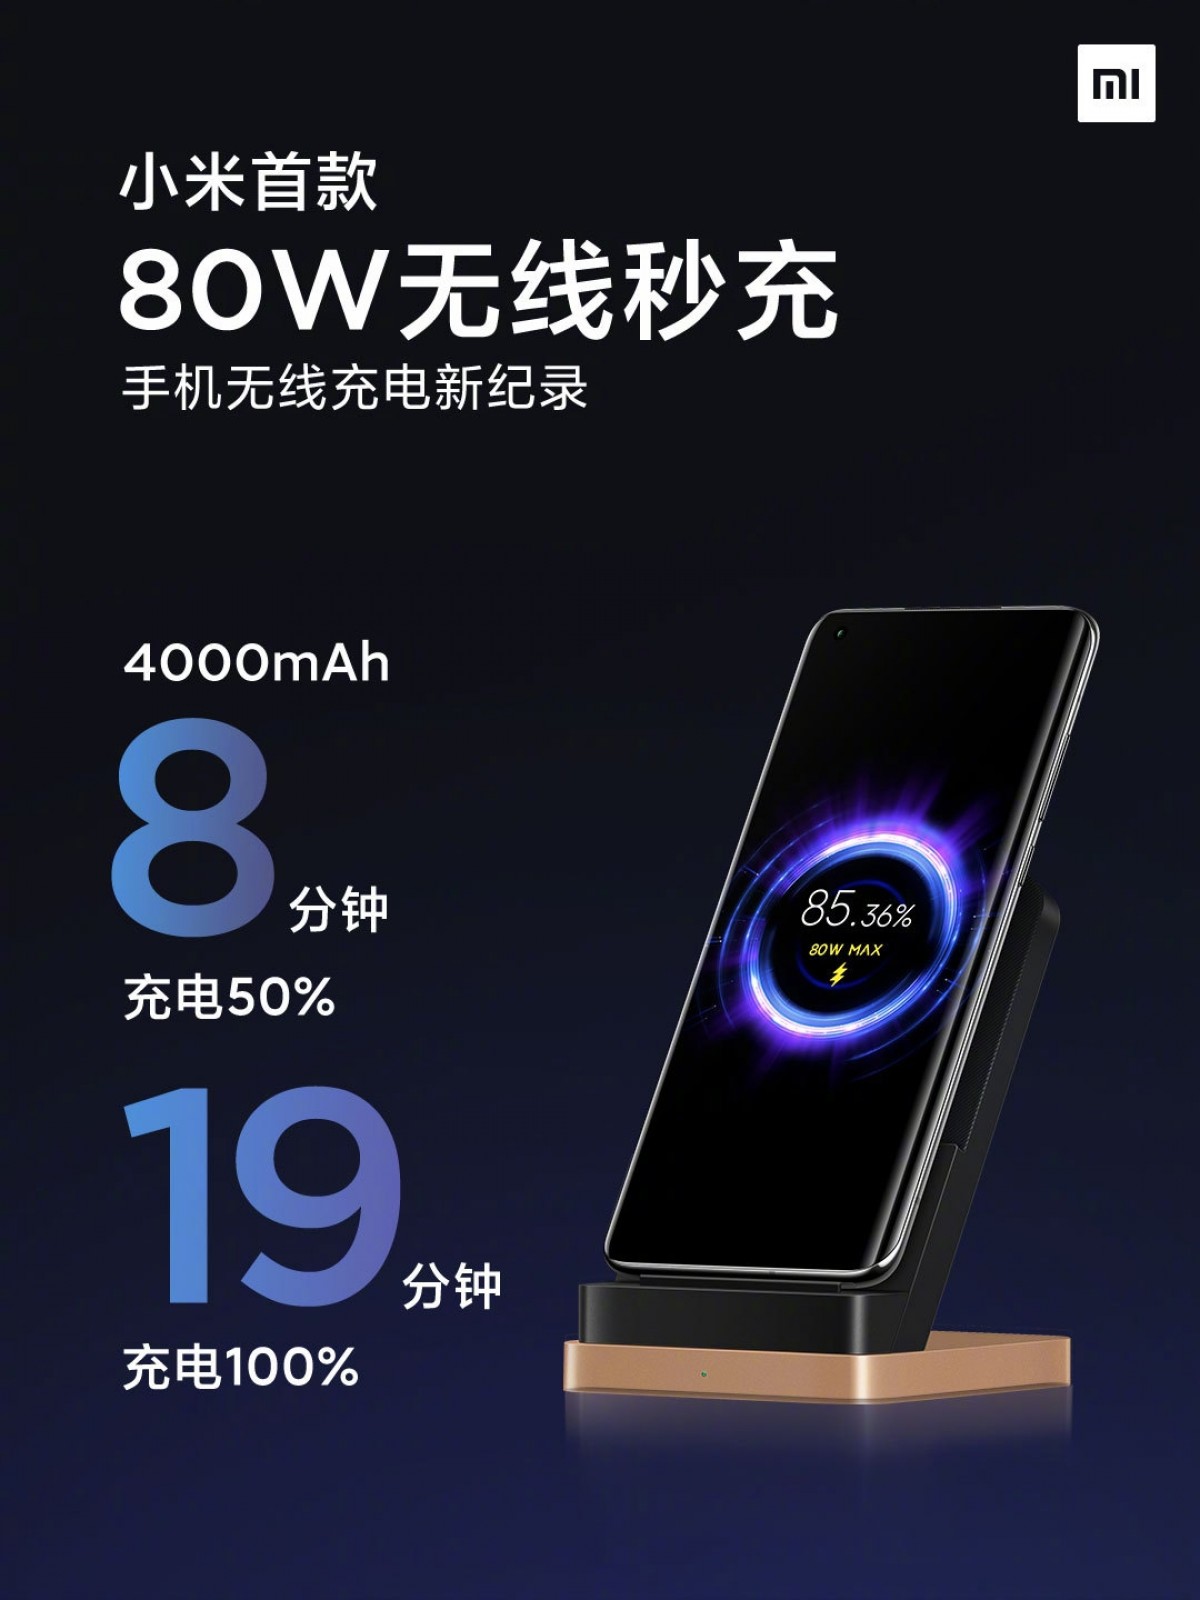 شركة Xiaomi أنشأت شاحن لاسلكي بقوة 80W، ويشحن البطارية بالكامل في غضون 19 دقيقة فقط